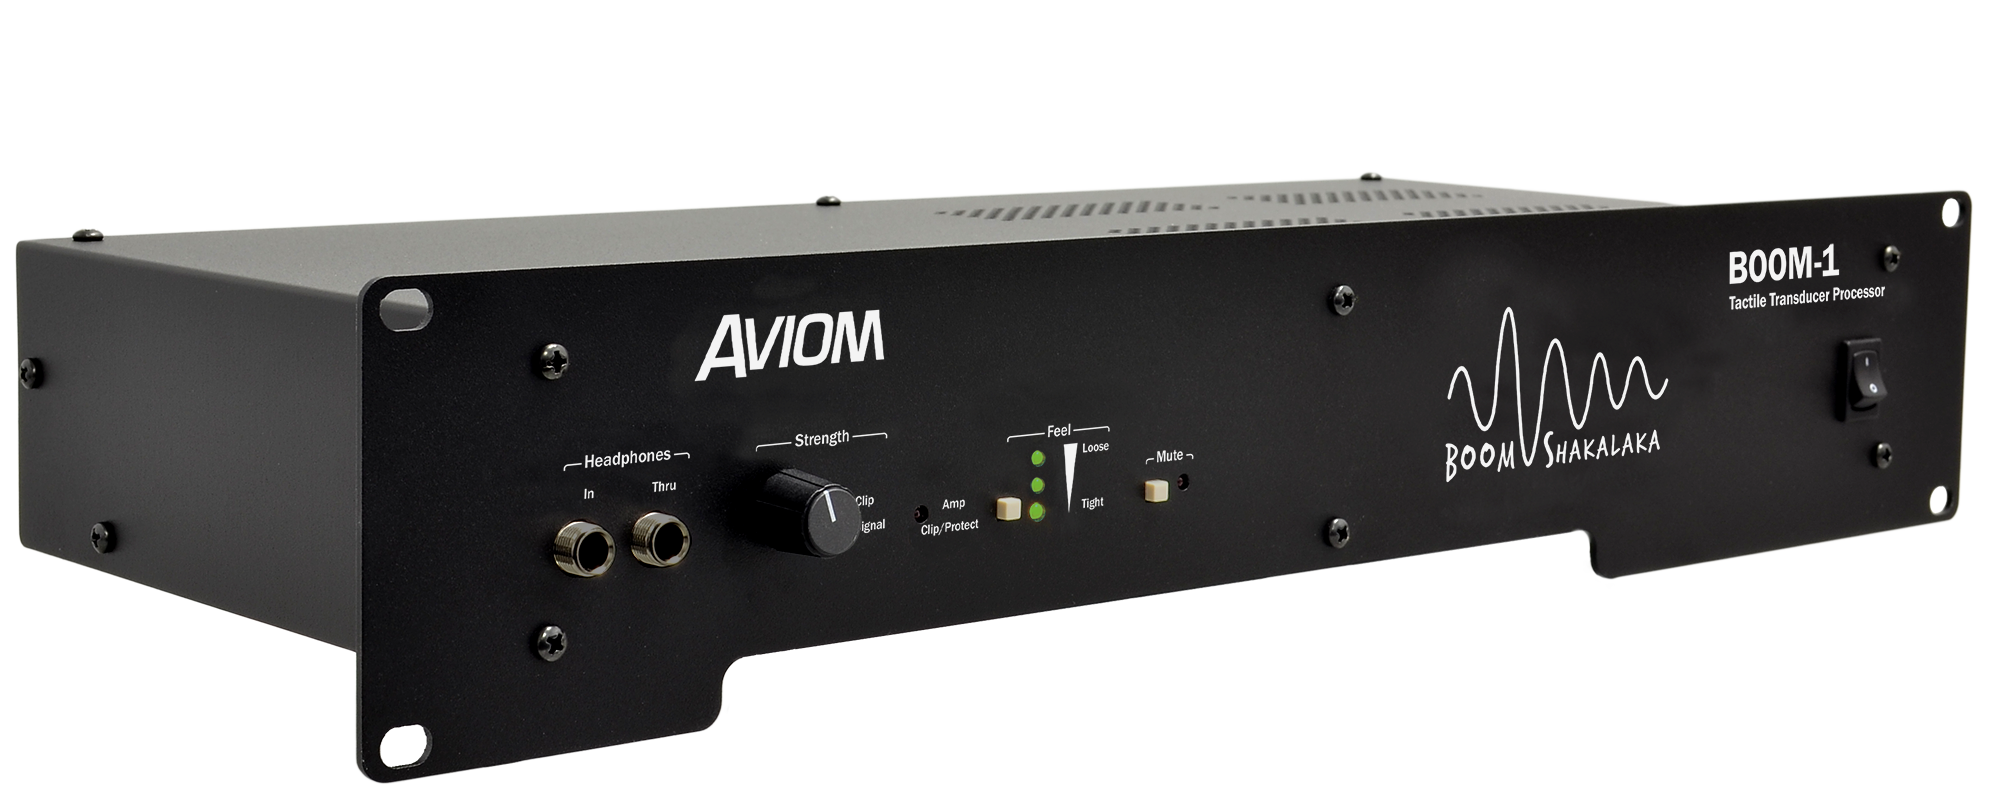 Aviom BOOM-1 - Professional Audio Design, Inc